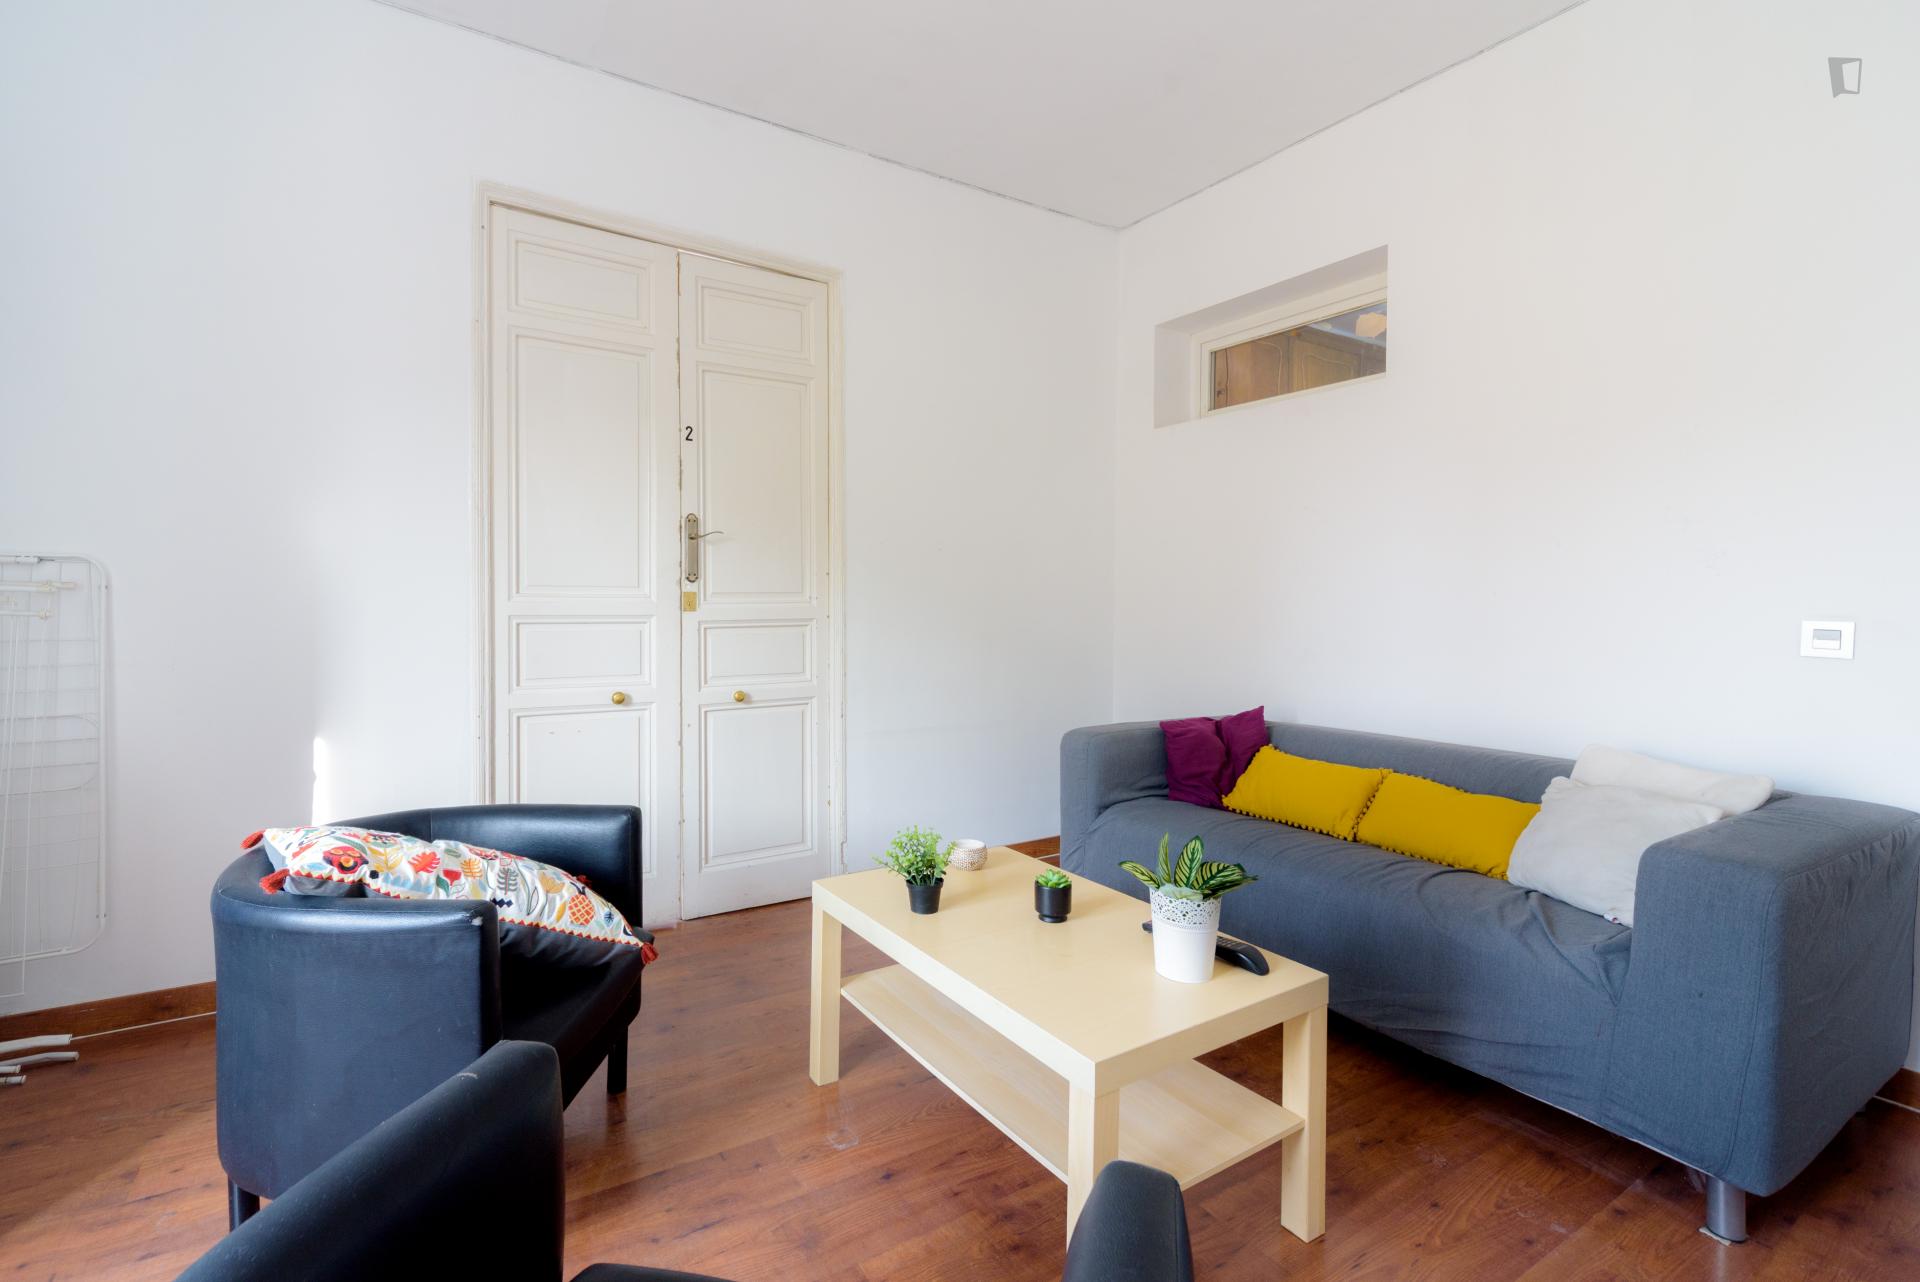 Bailen - Single bedroom in a shared flat